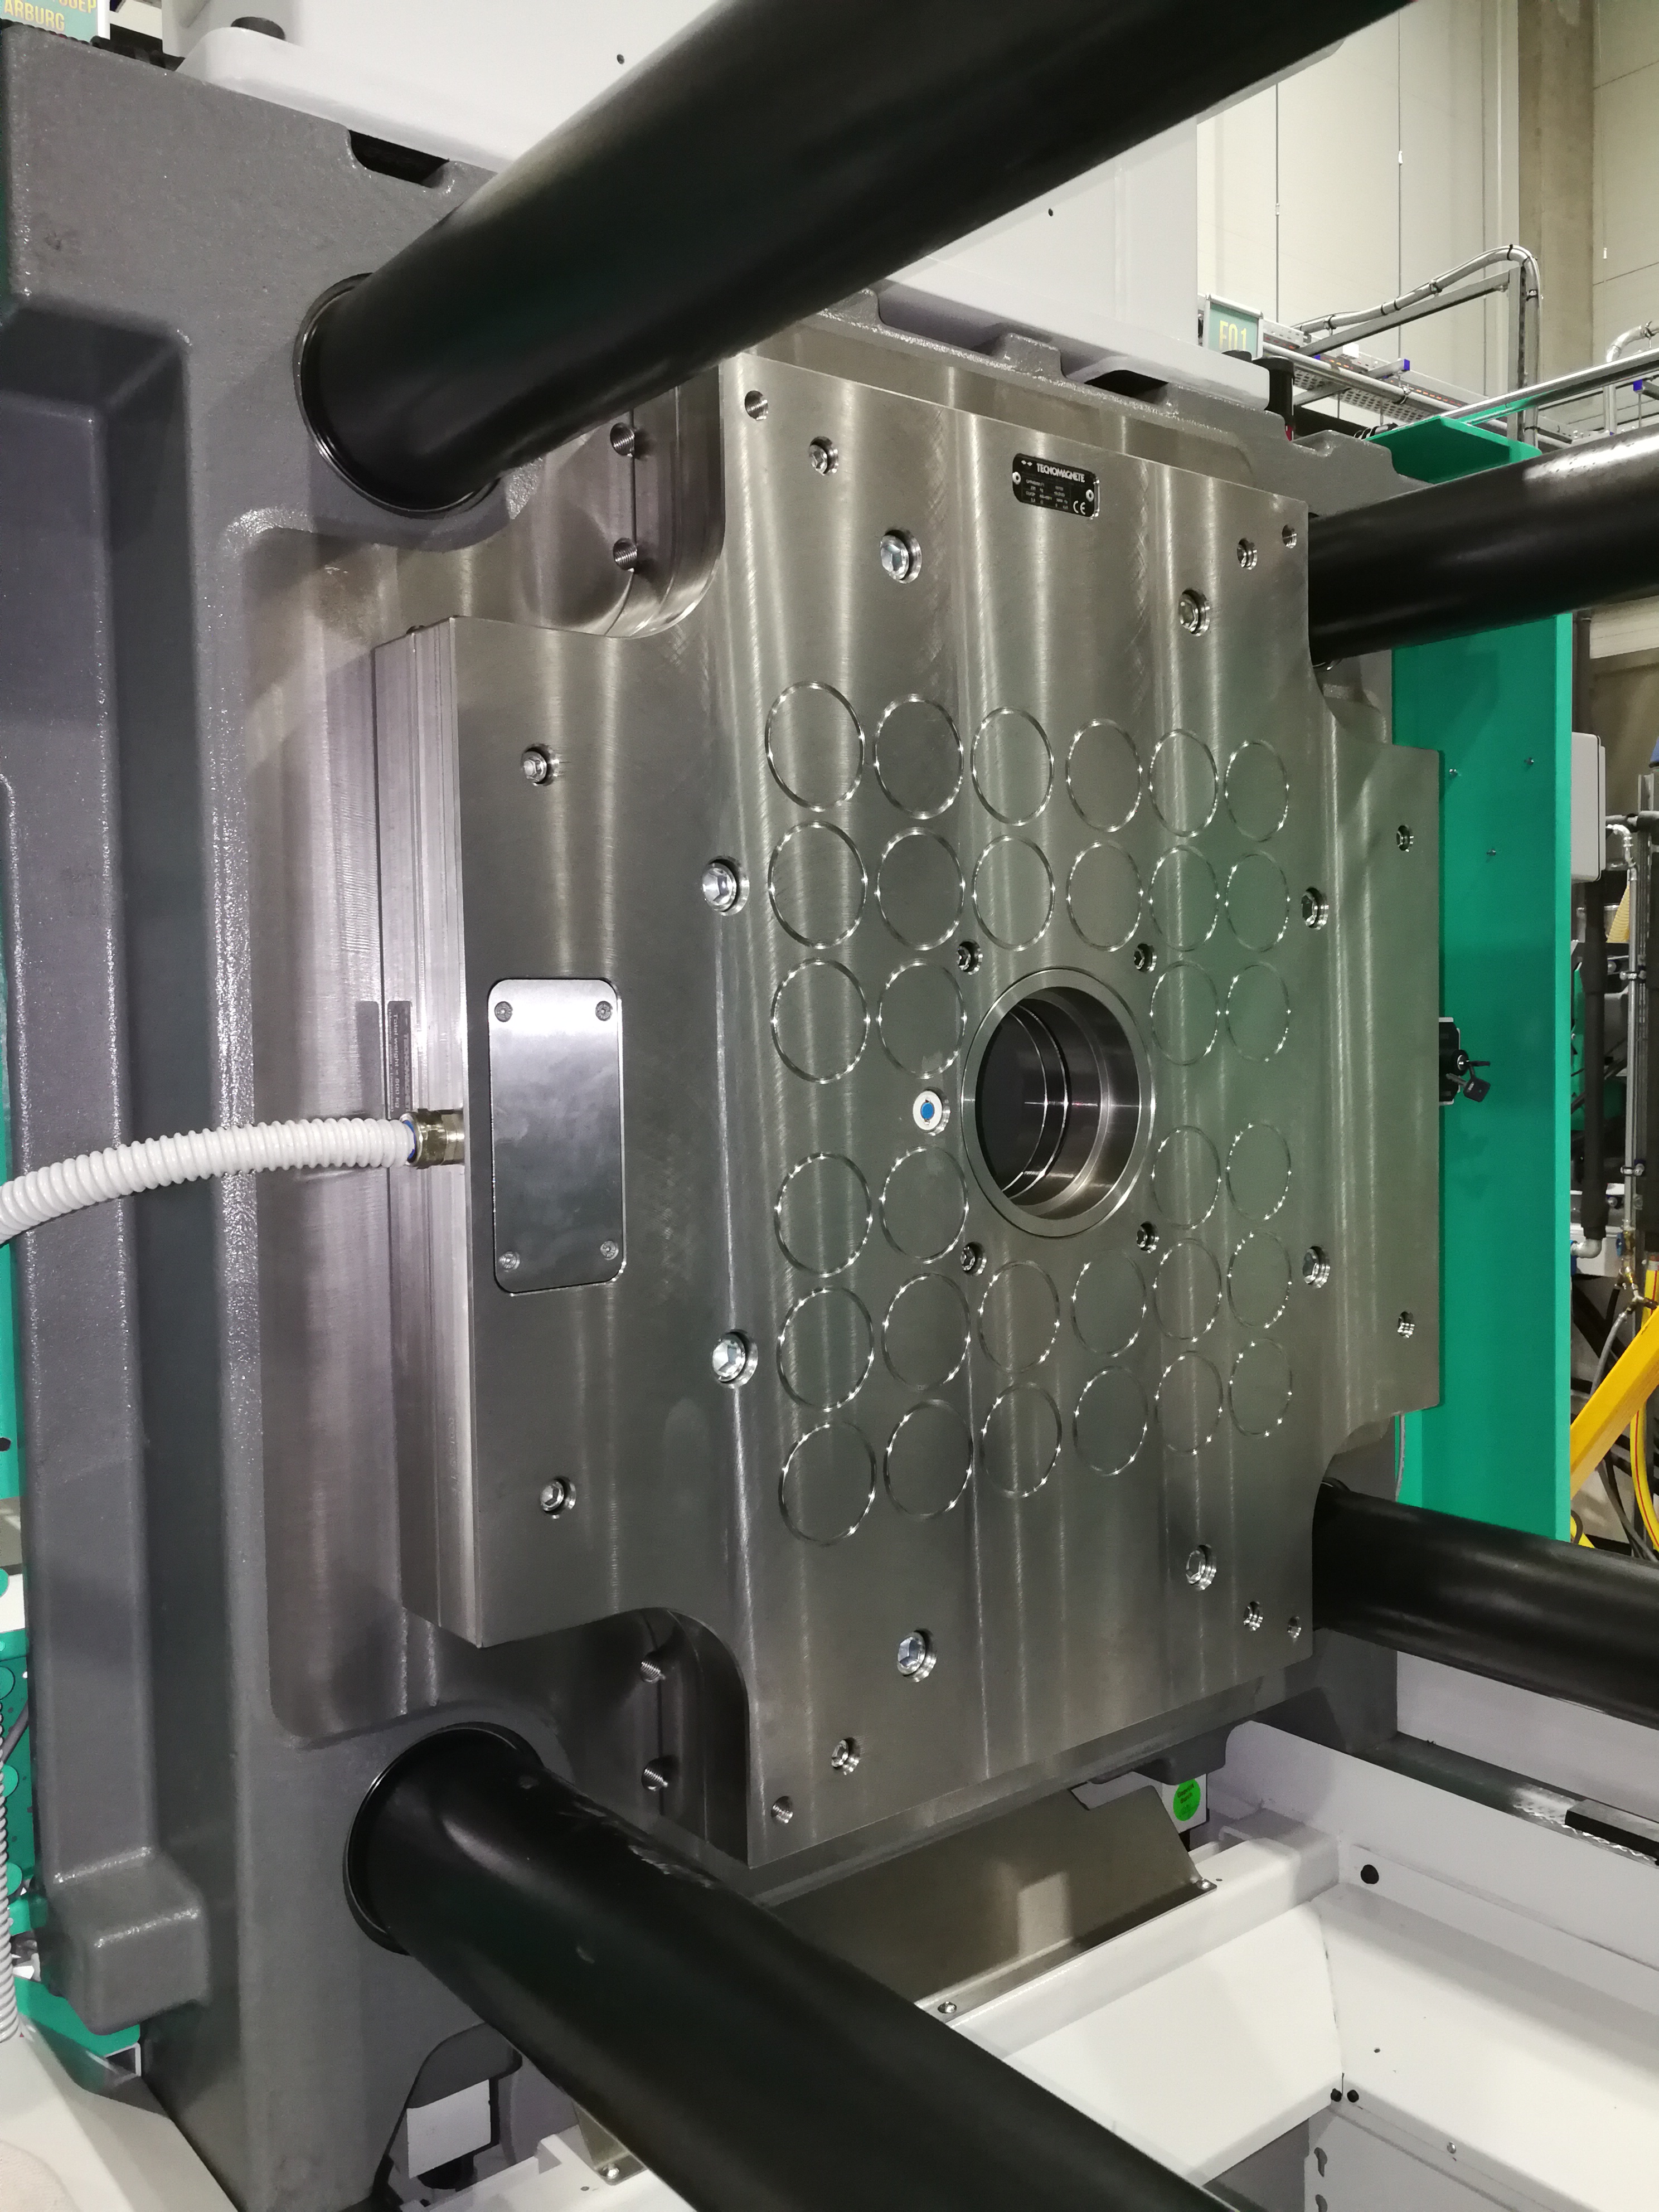 PressTec PT elektro-permanens mágneses szerszámrögzítő rendszer Arburg fröccsöntőgépen